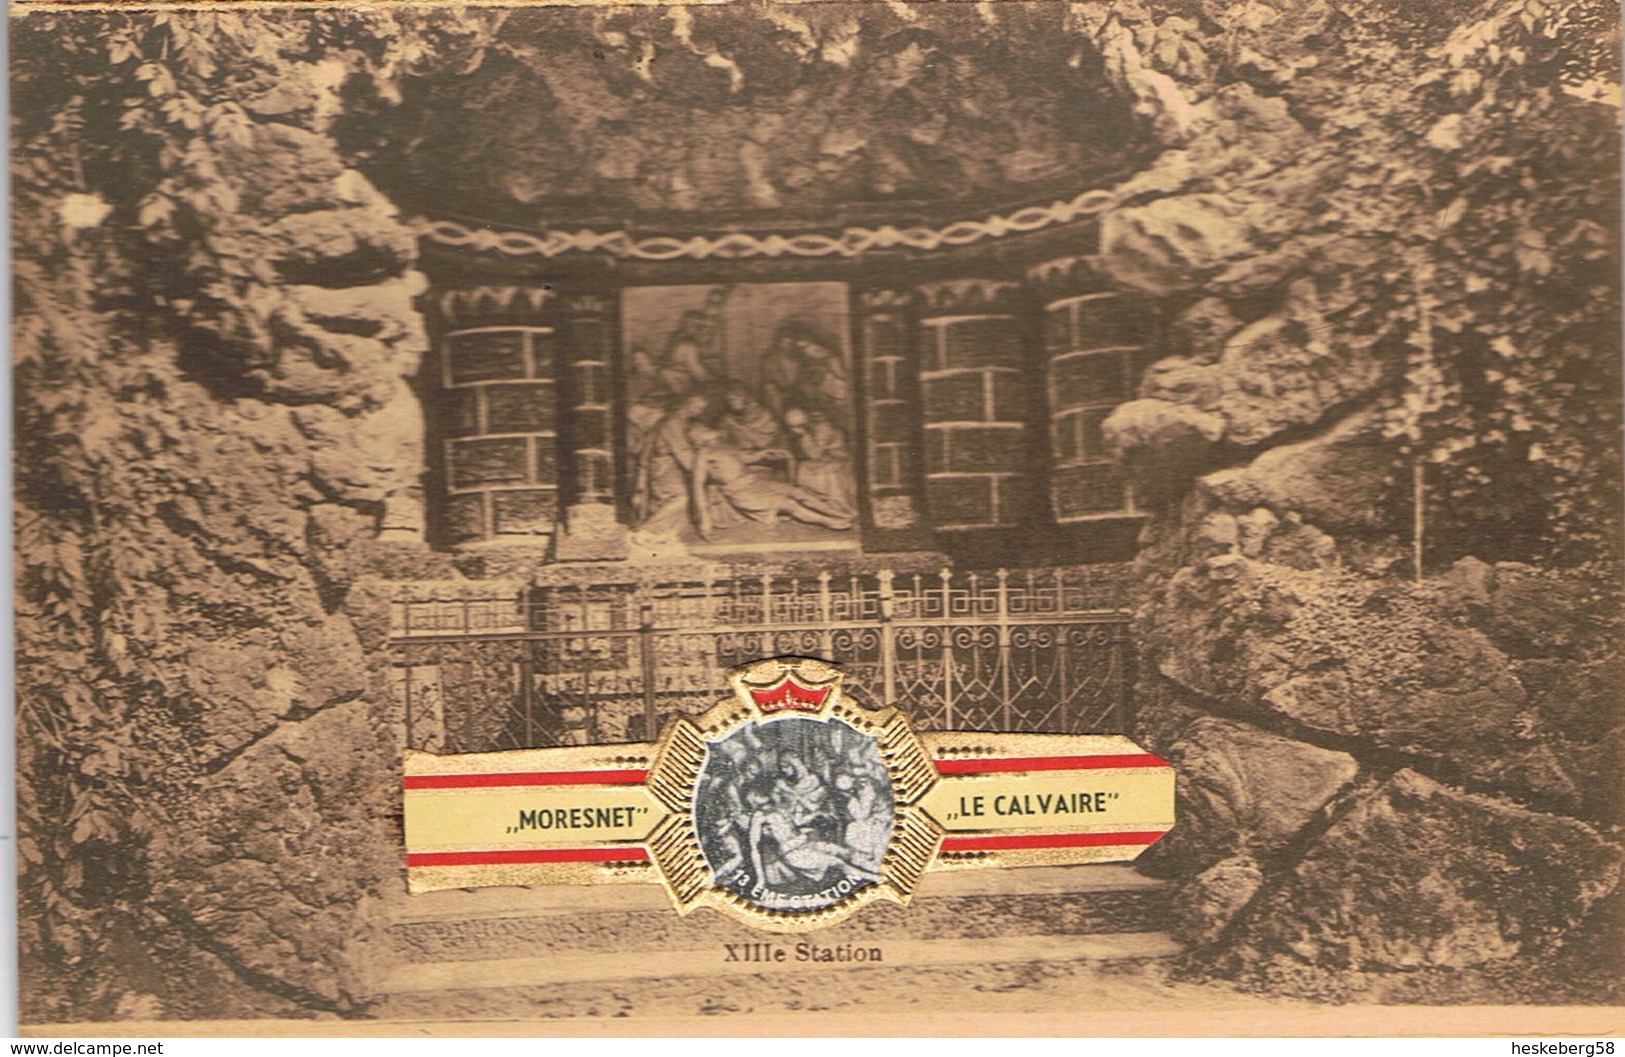 Pochette de cartes postales sur MORESNET- Le Sanctuaire + bagues de cigare